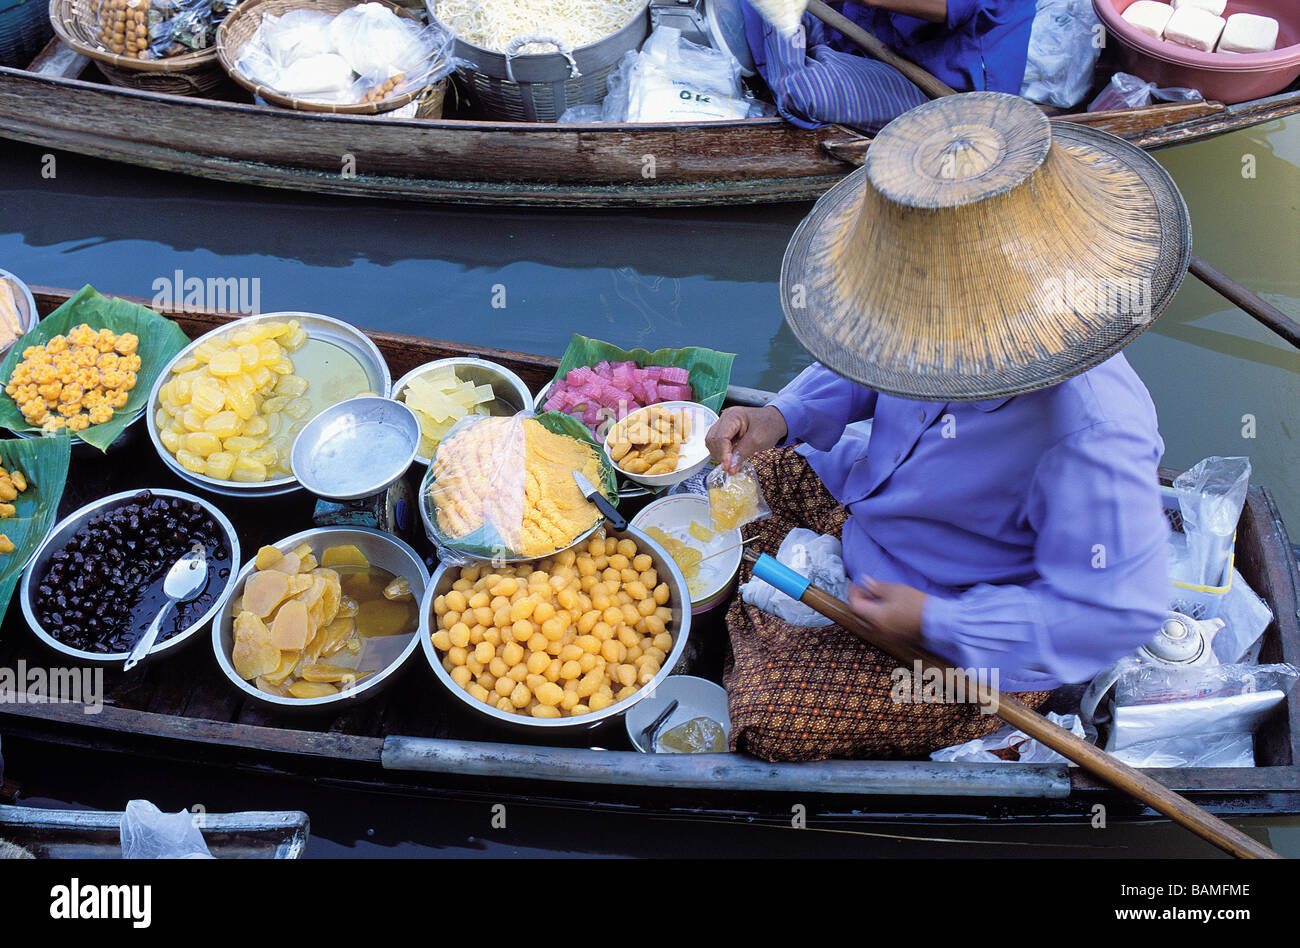 Thailand, Samut Songkhram province, Damnoen Saduak, floating market Stock Photo